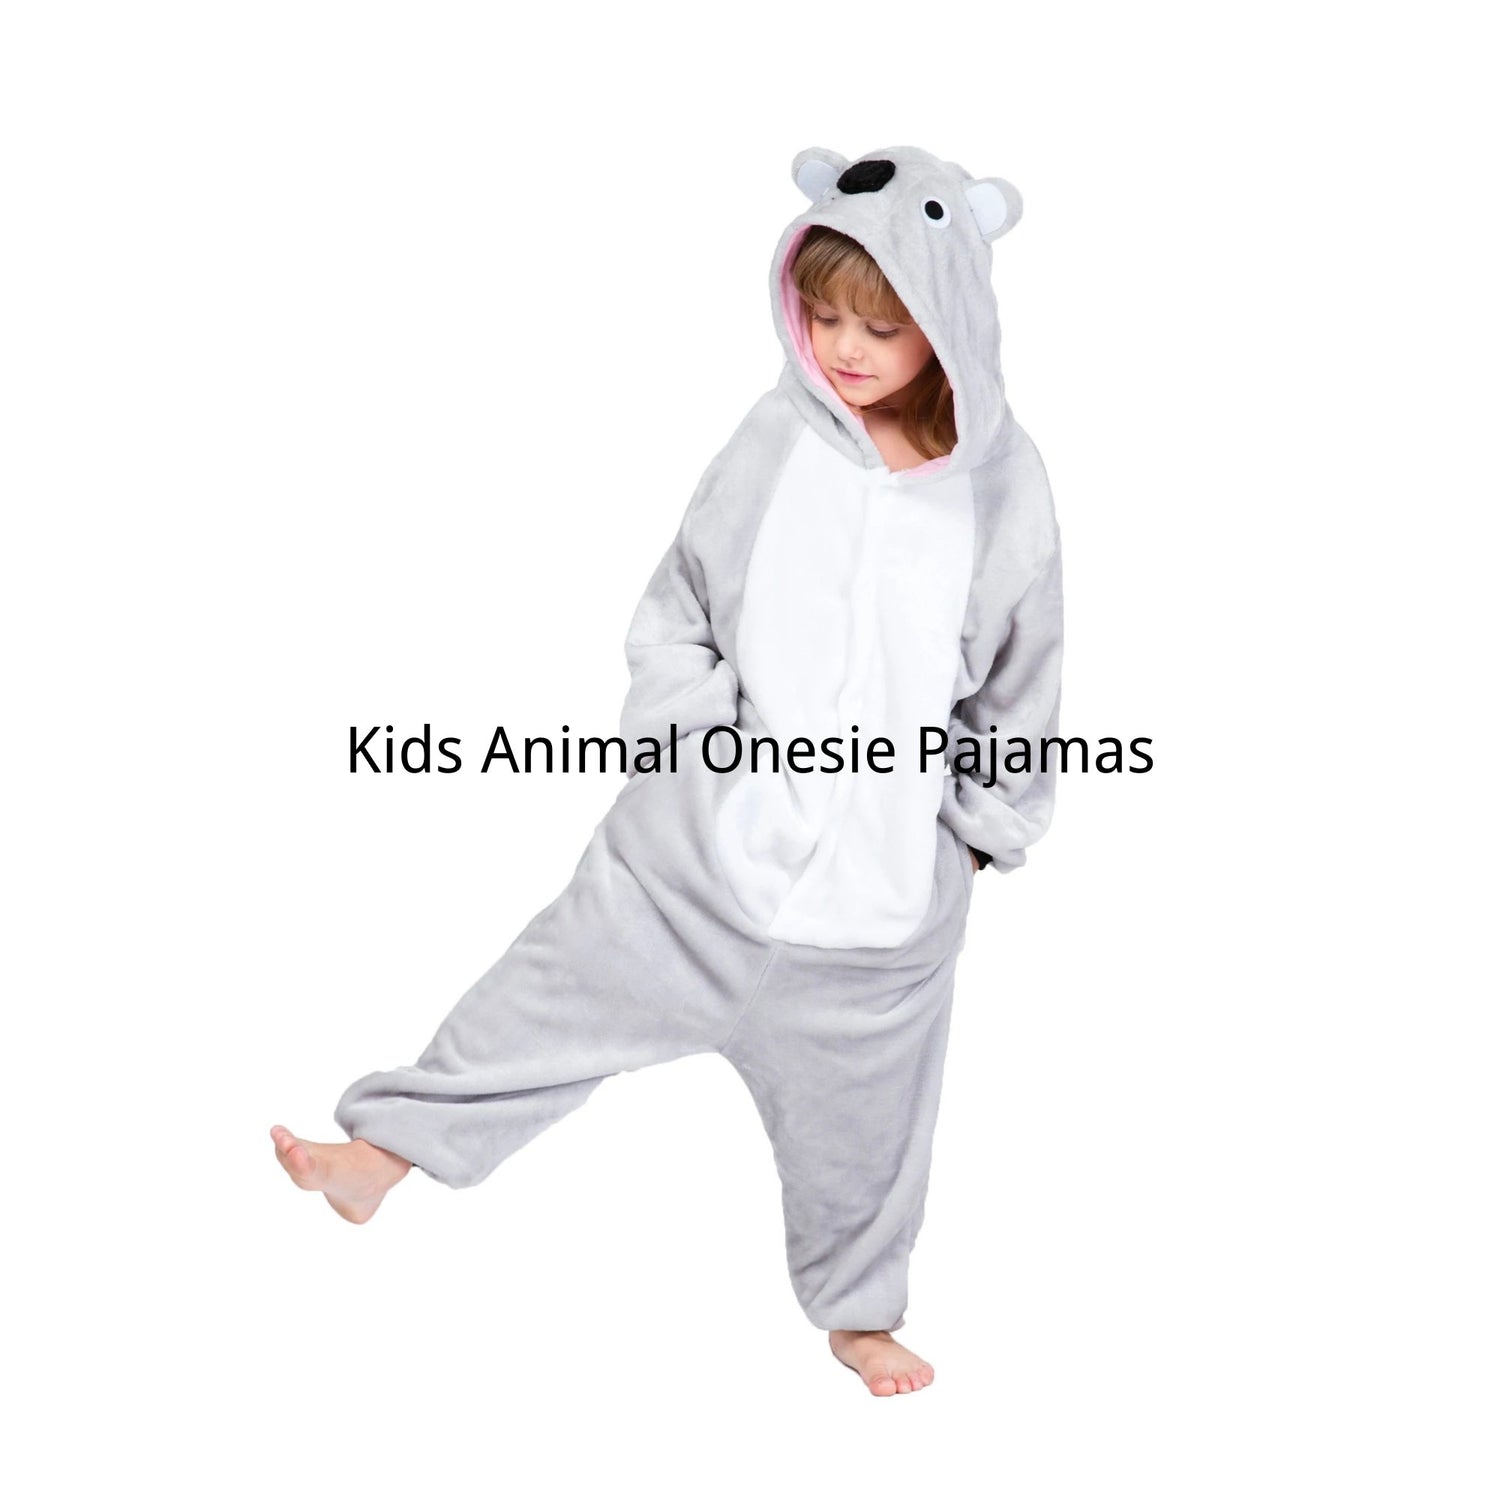 Kids Animal Onesie Pajamas